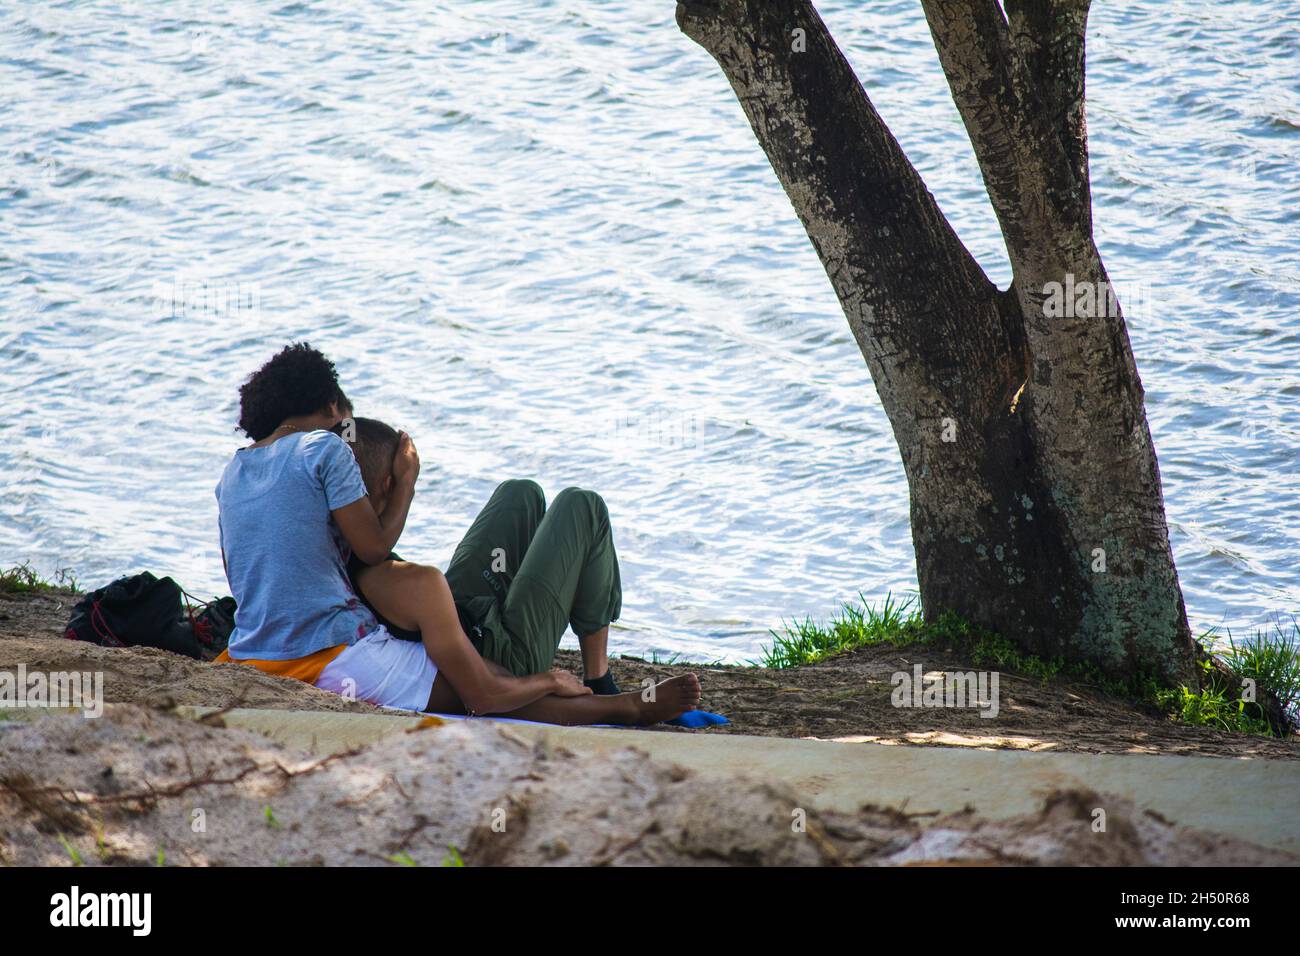 Salvador, Bahia, Brasile - 17 agosto 2014: Coppia godendo e rilassante di fronte al bellissimo paesaggio del Parque de Pituacu. Foto Stock